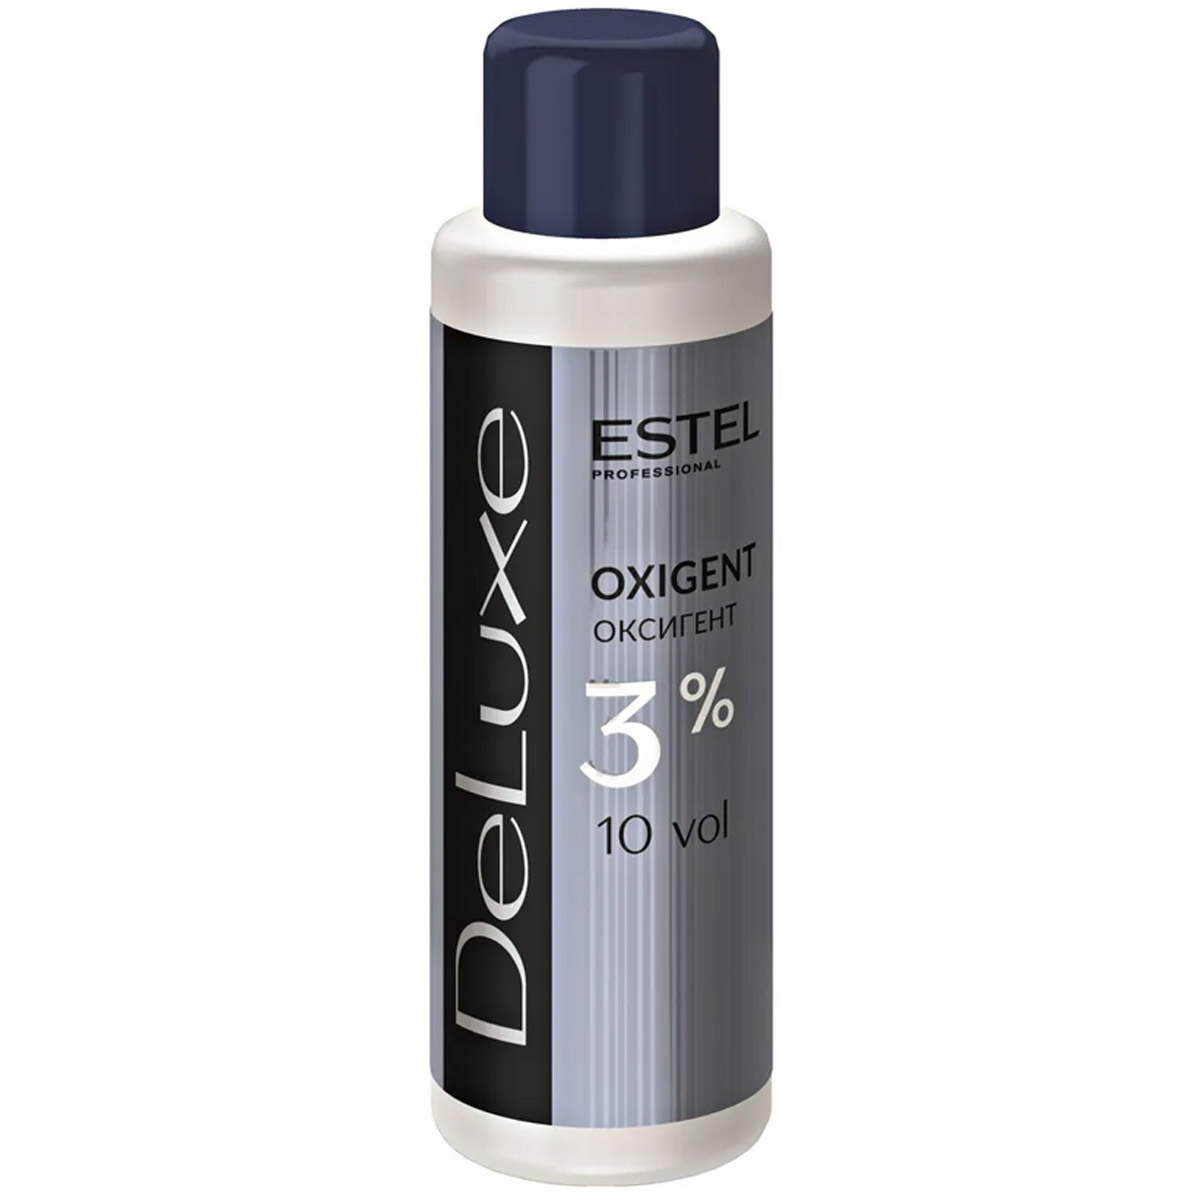 Estel Оксигент De Luxe 3%, 60 мл (Estel, De luxe) estel шампунь для волос стабилизатор цвета 1000 мл estel de luxe